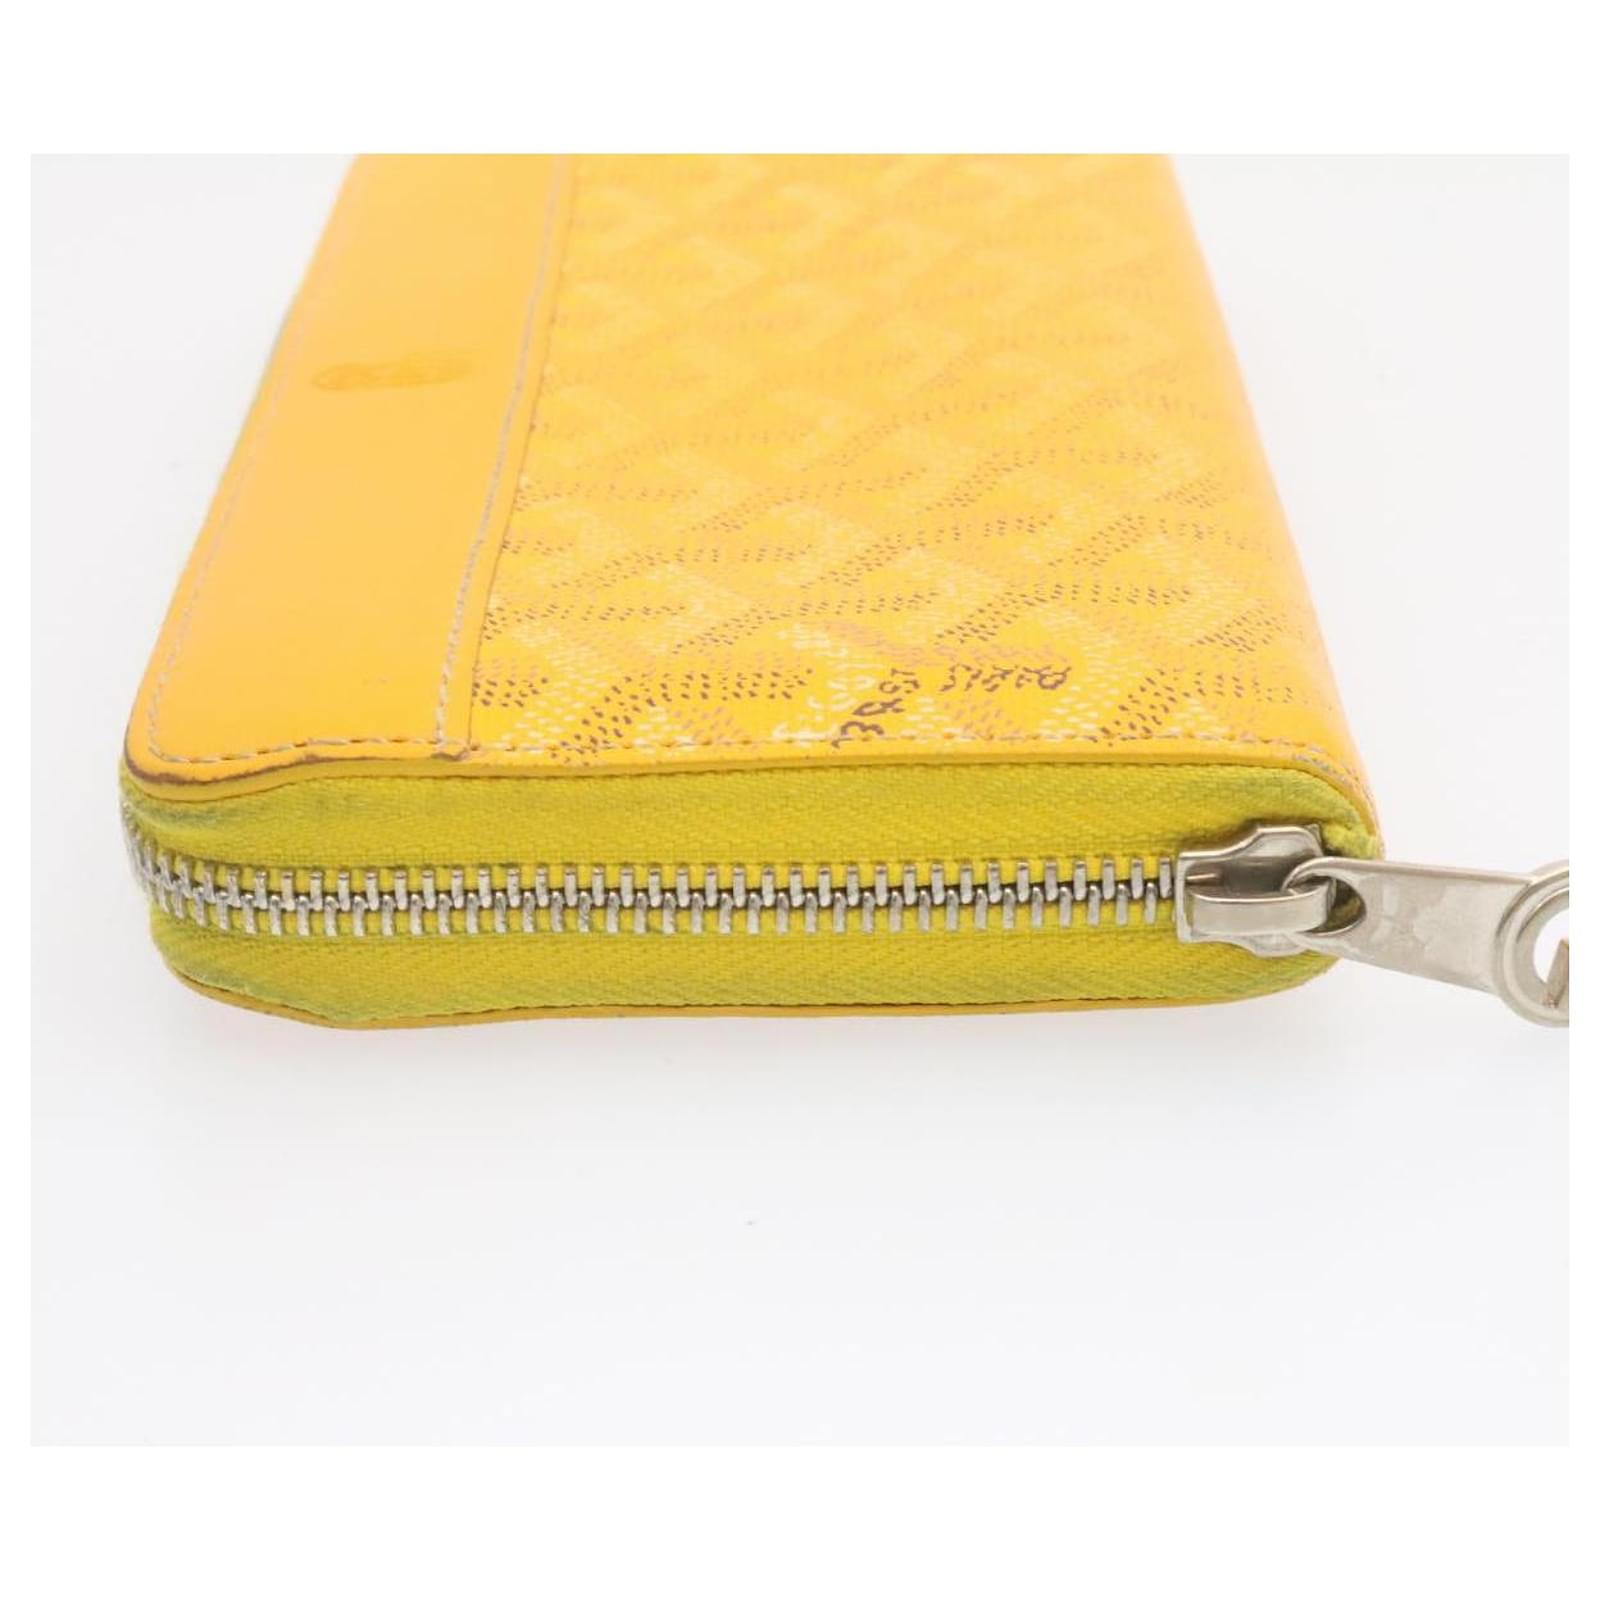 Goyard Long Wallet Yellow Chn020131 woman